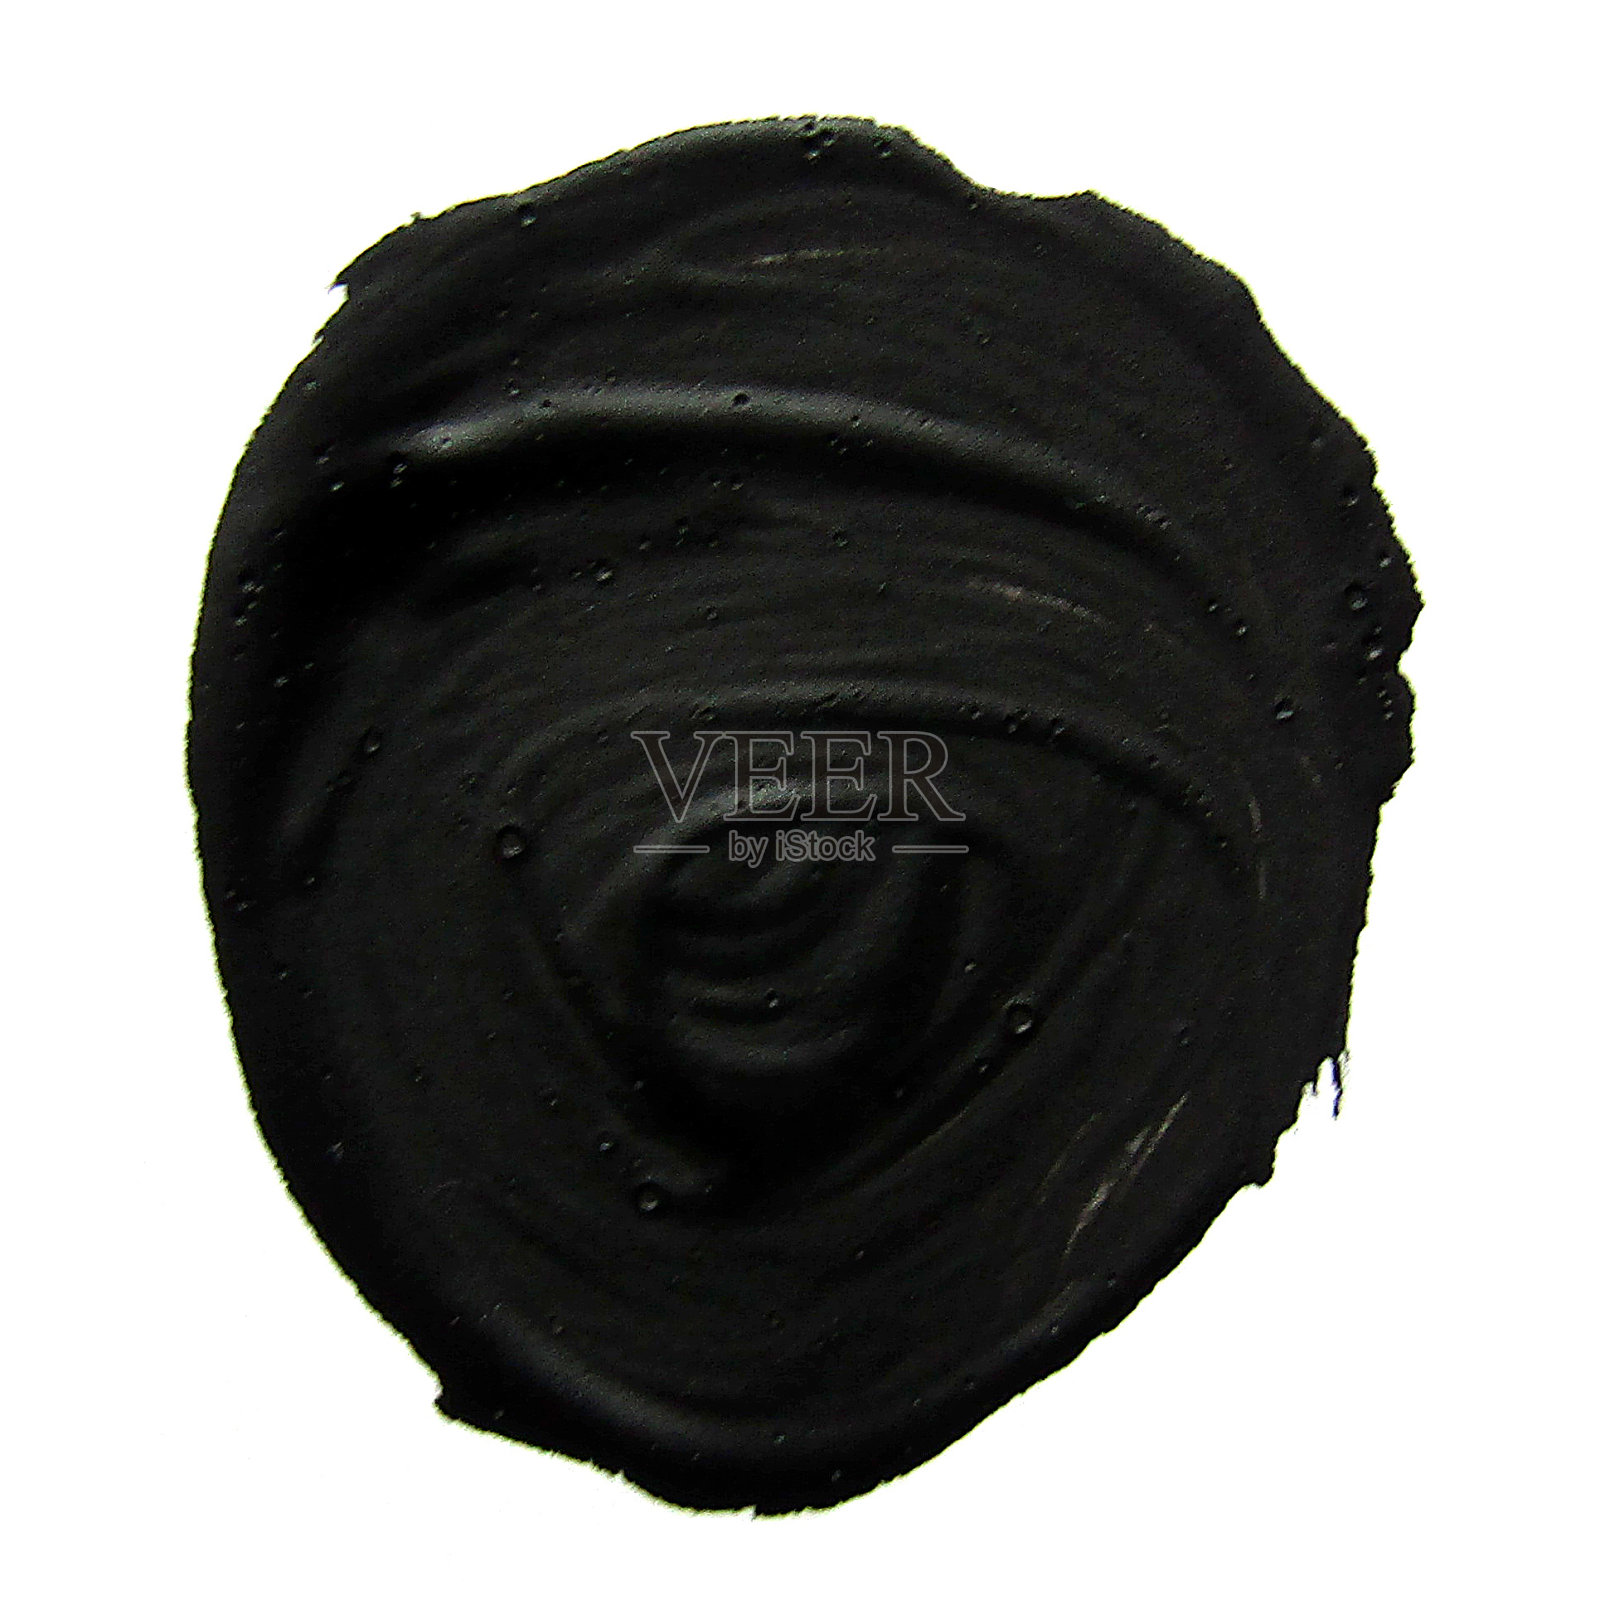 黑色的圆圈。抽象水粉笔触插画图片素材